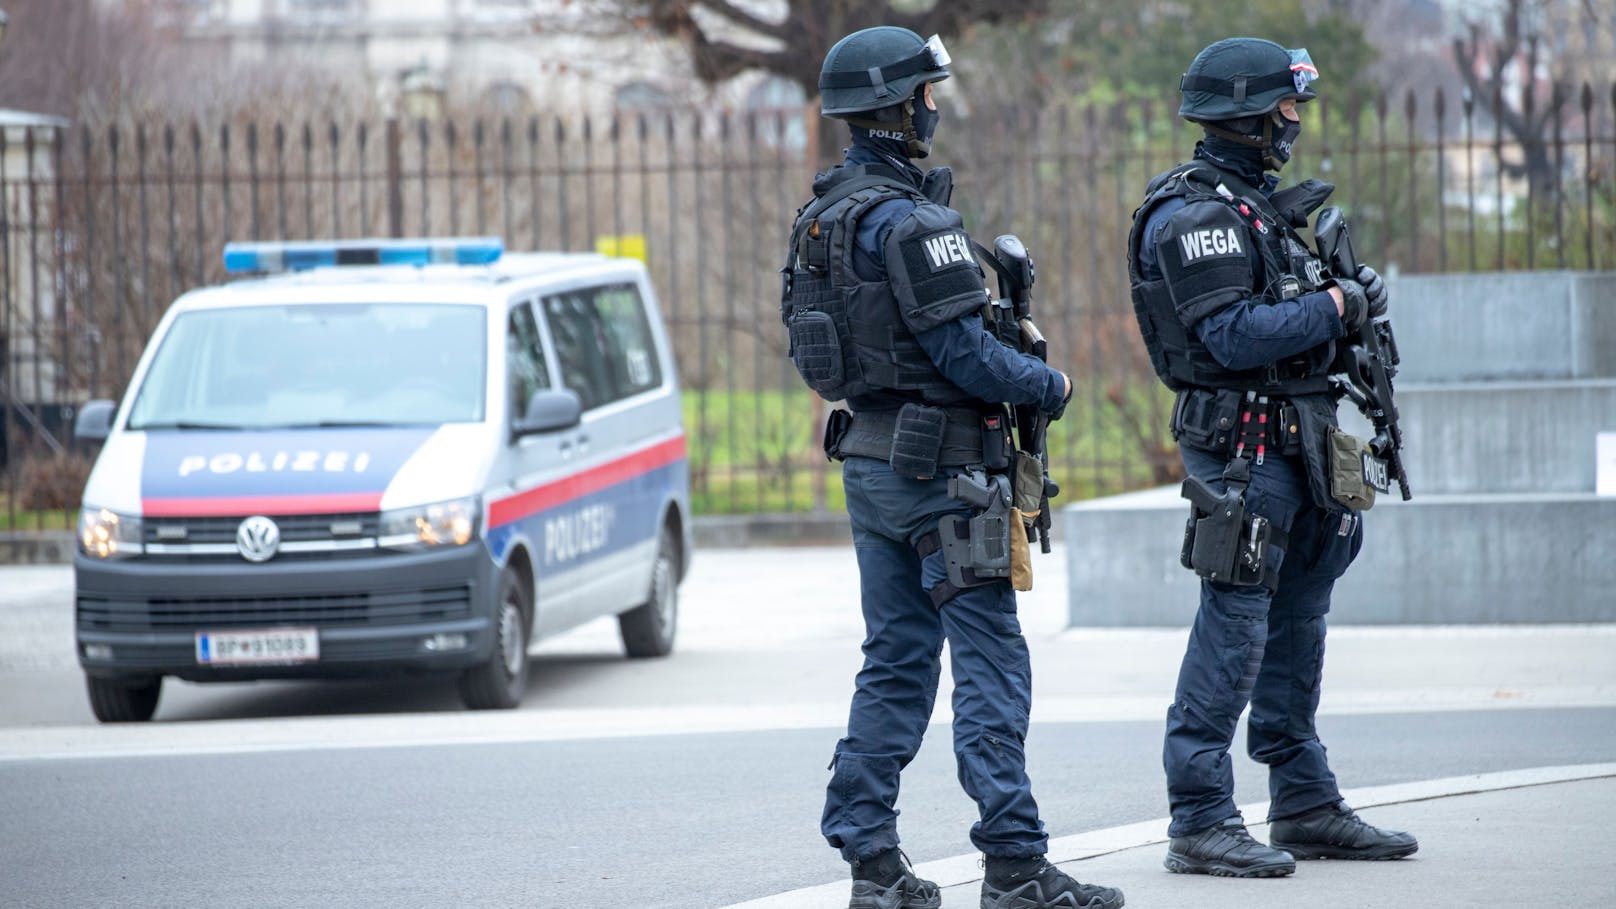 Polizei rüstet sich für Krawall-Nacht in Wien